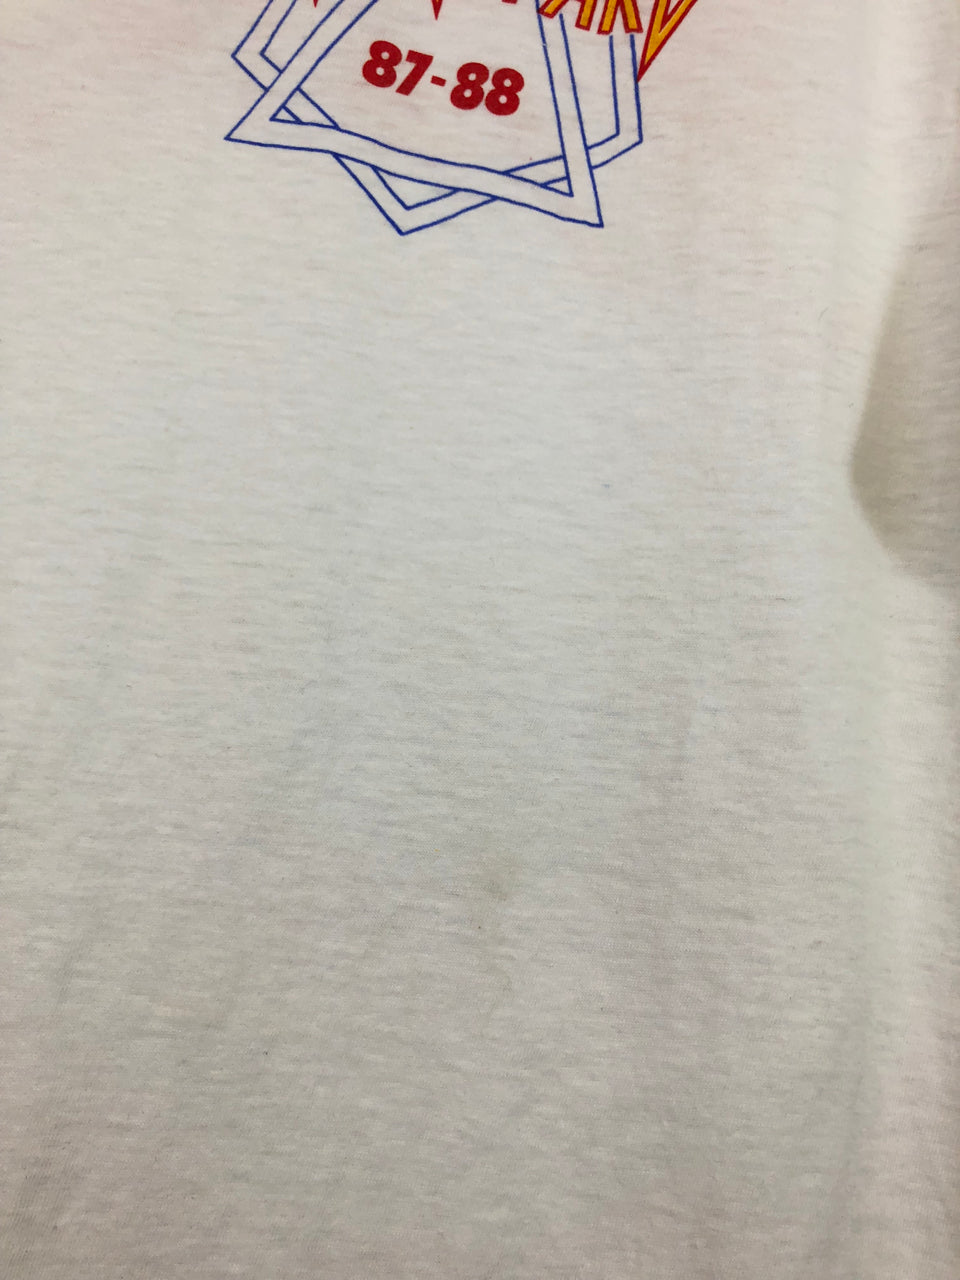 Def Leppard '87-'88 Tour Crew T-Shirt